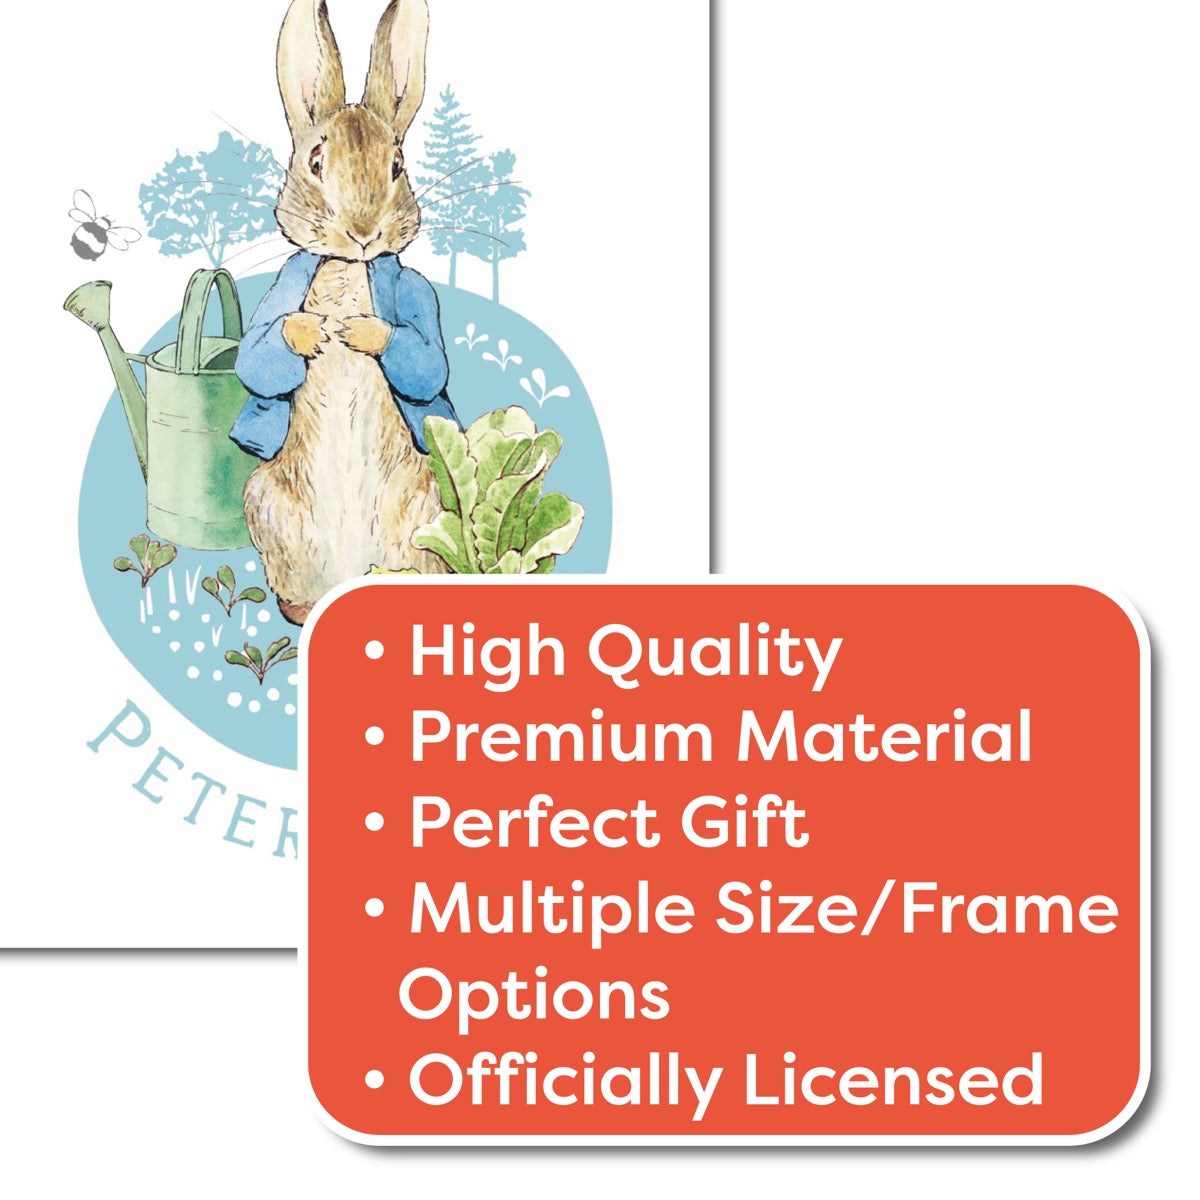 Peter Rabbit Print - Peter Garden Circle Print